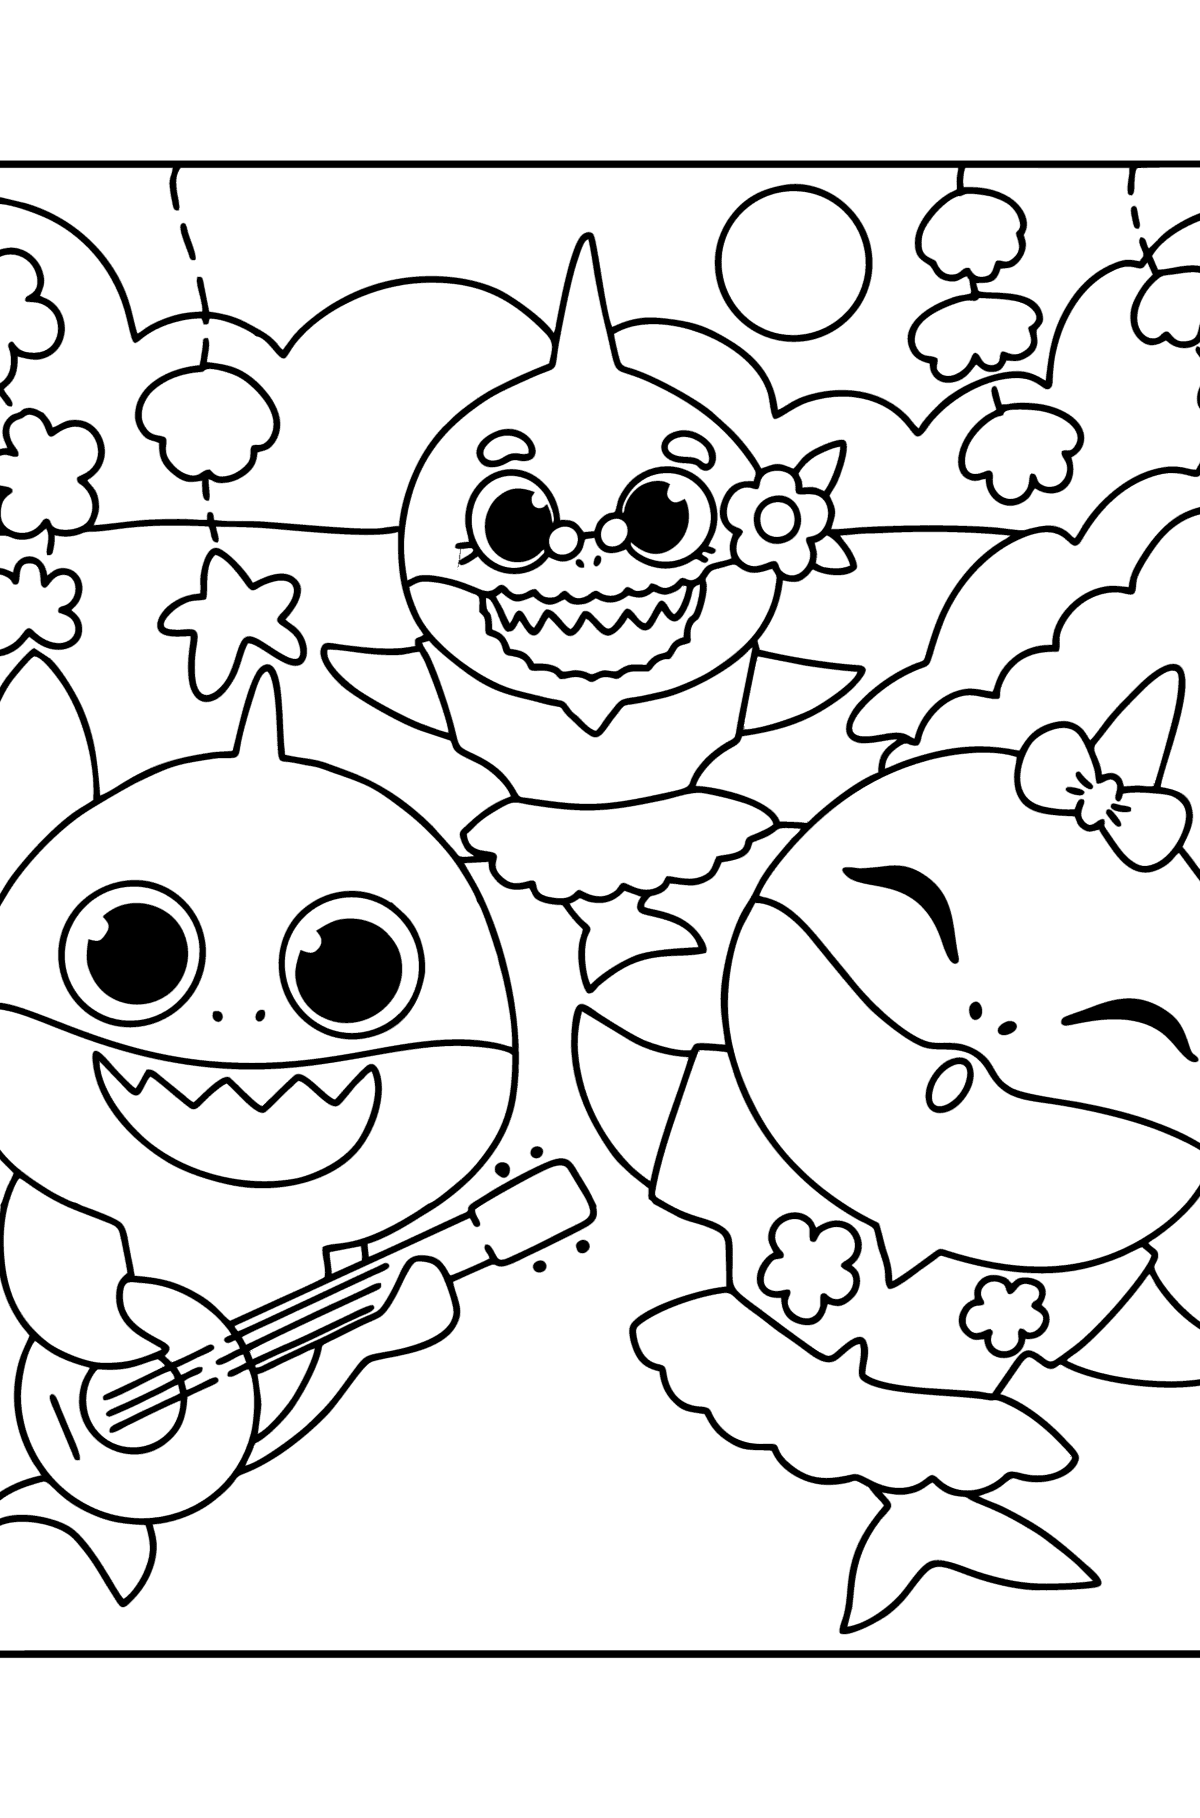 Desenho de Partido Baby shark para colorir - Imagens para Colorir para Crianças